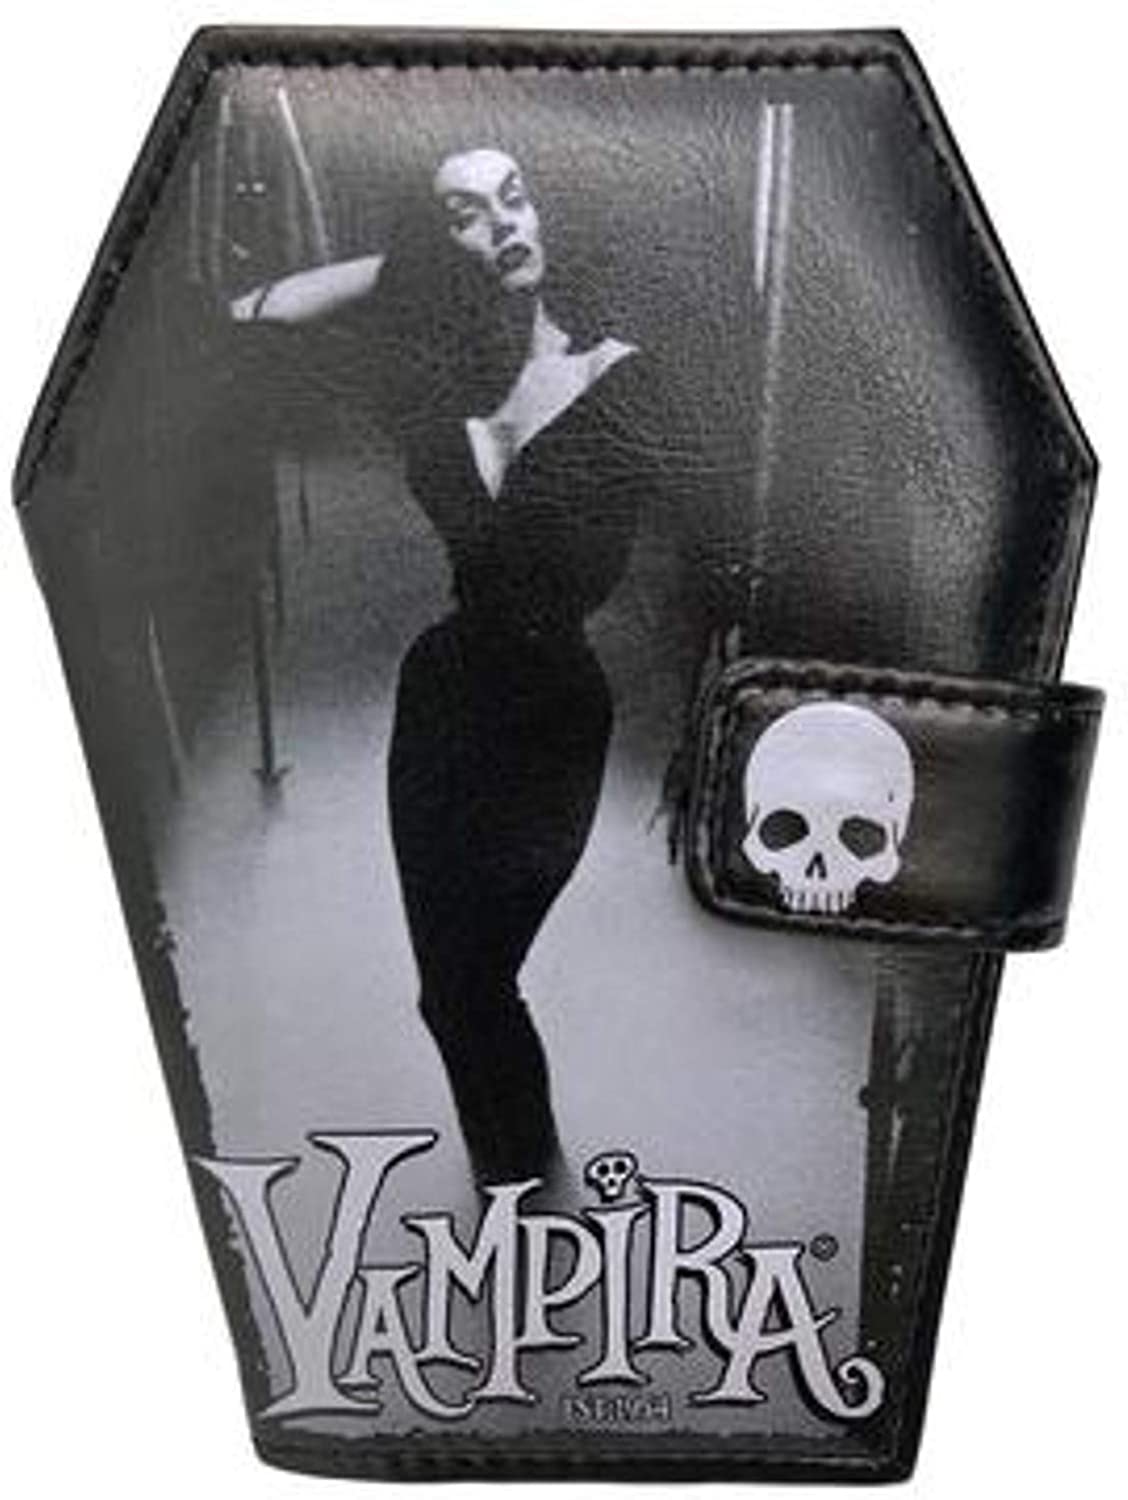 Kreepsville 666 Vampira Mist Coffin Wallet